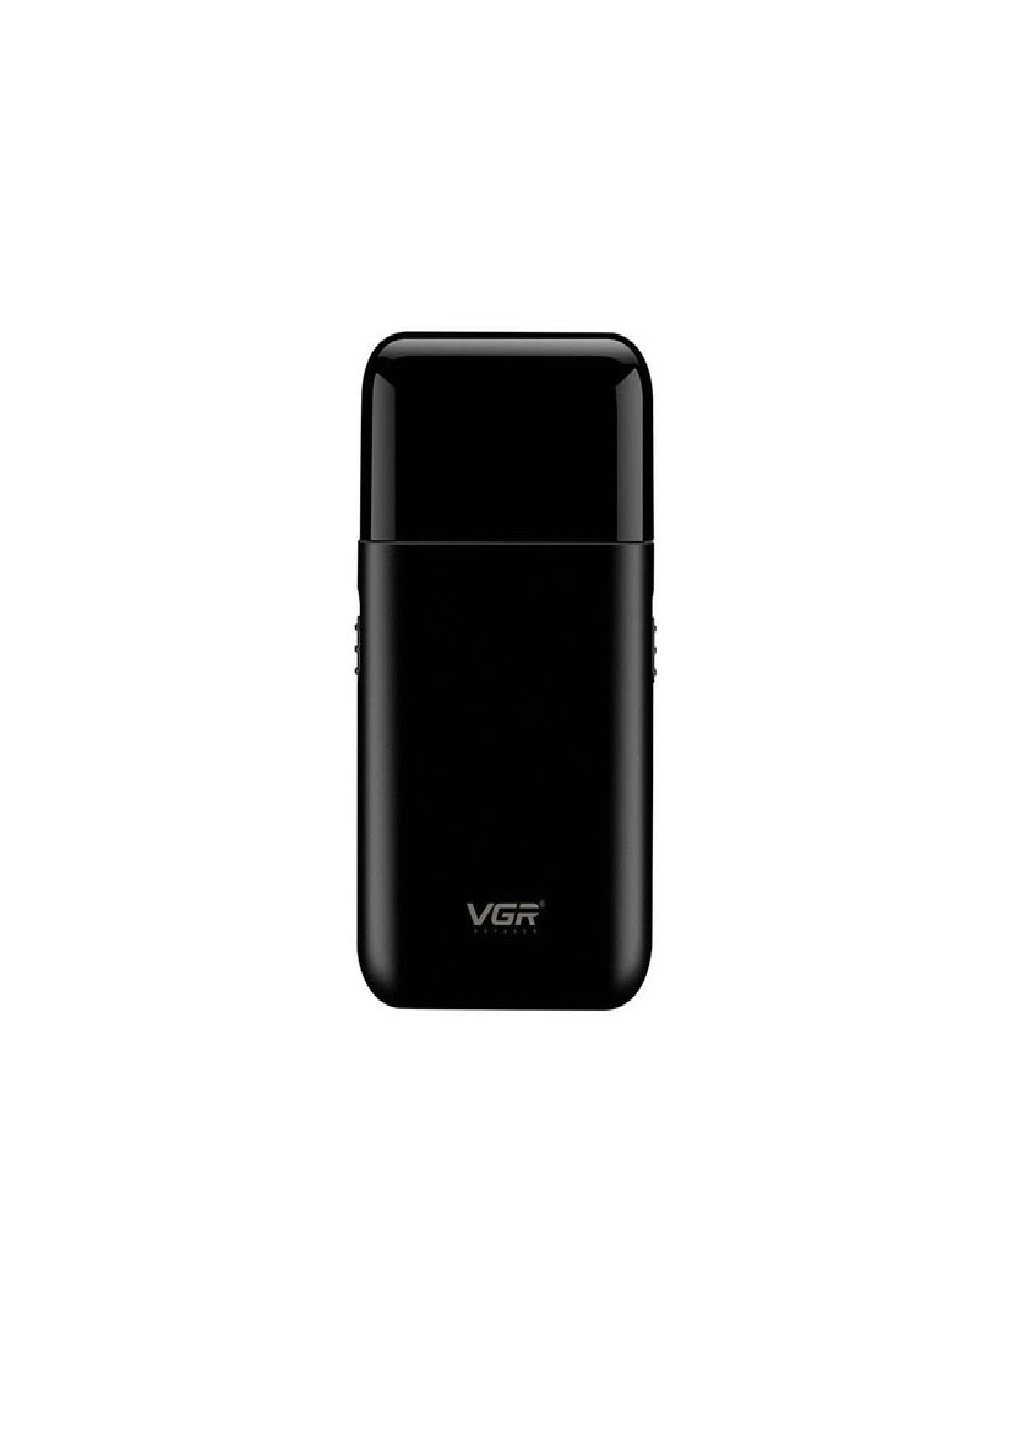 Электробритва V-390 бритва аккумуляторная VGR (277979656)